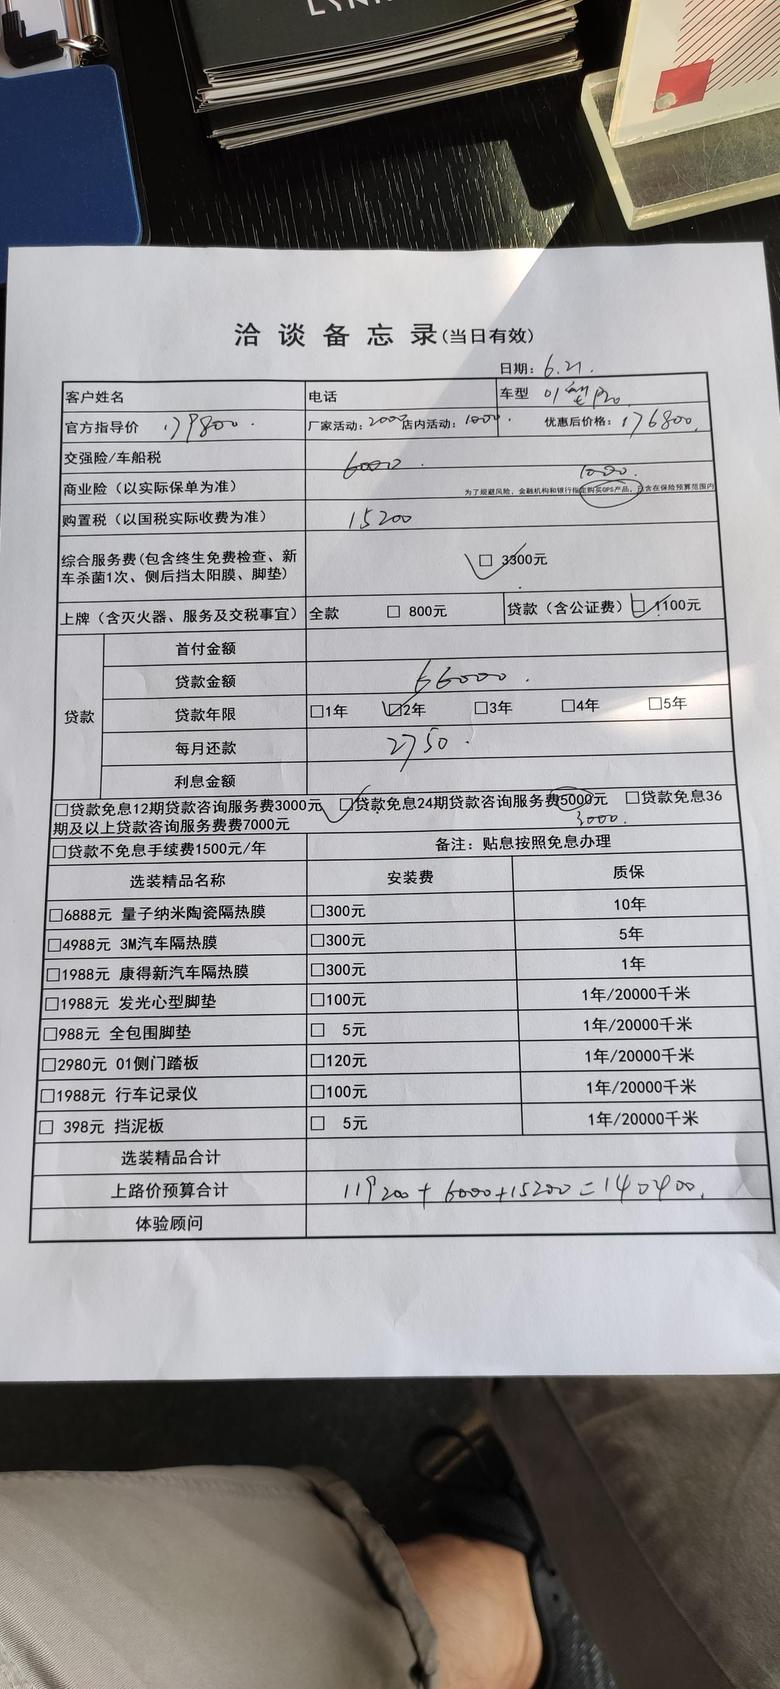 领克01 坐标扬州，今天去4s给的报价，销售说他的权限能下6600，有没有江苏的车友最近提车的？